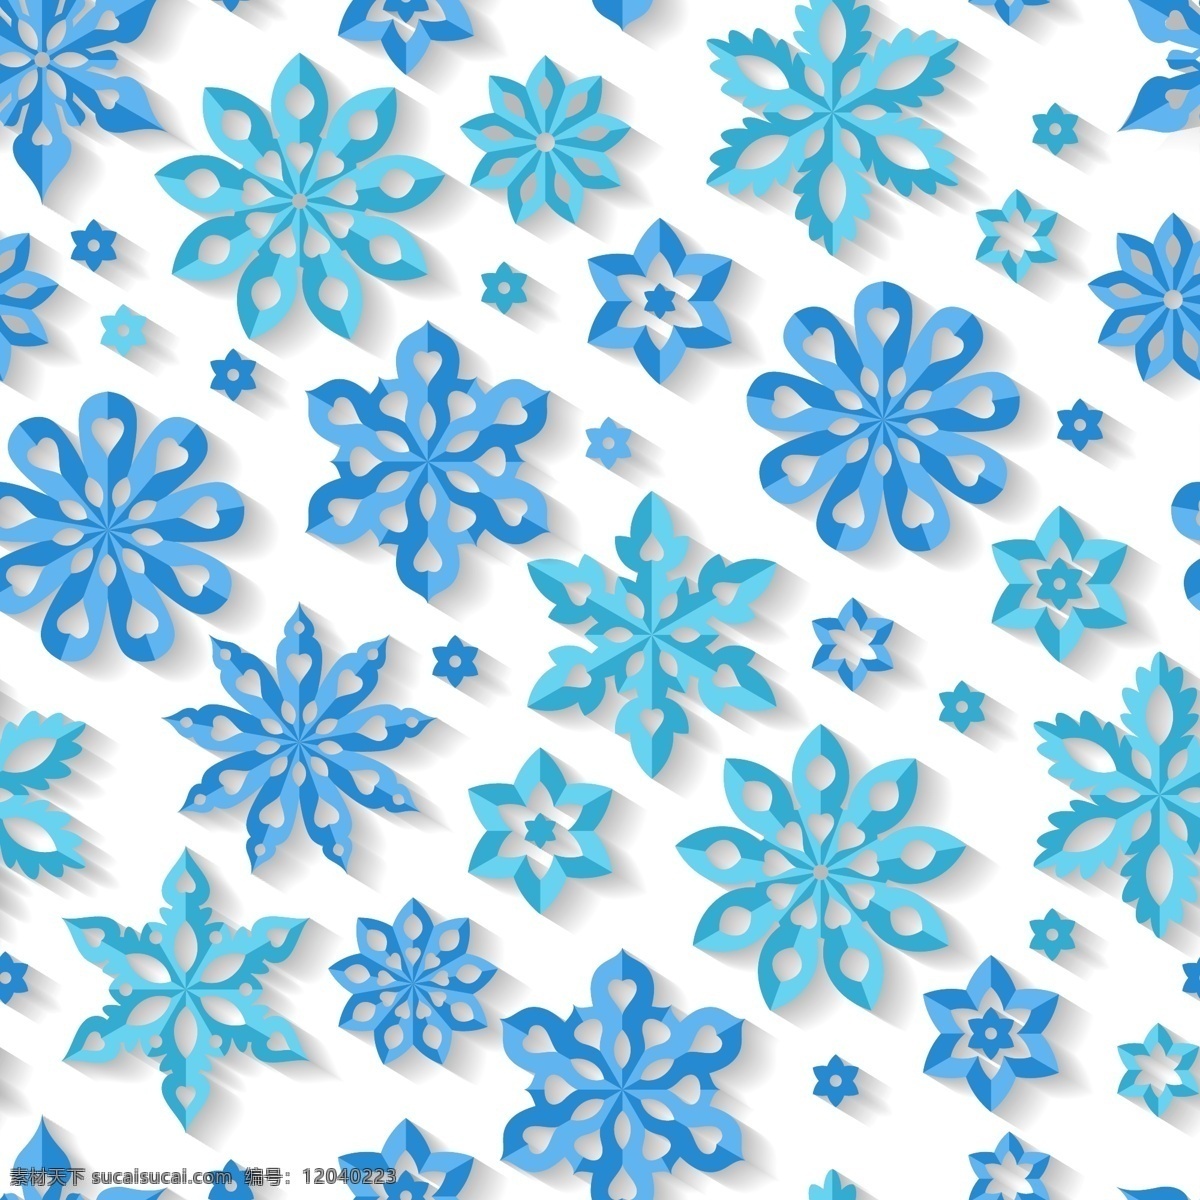 立体 蓝色 雪花 背景 底纹 唯美 冬天